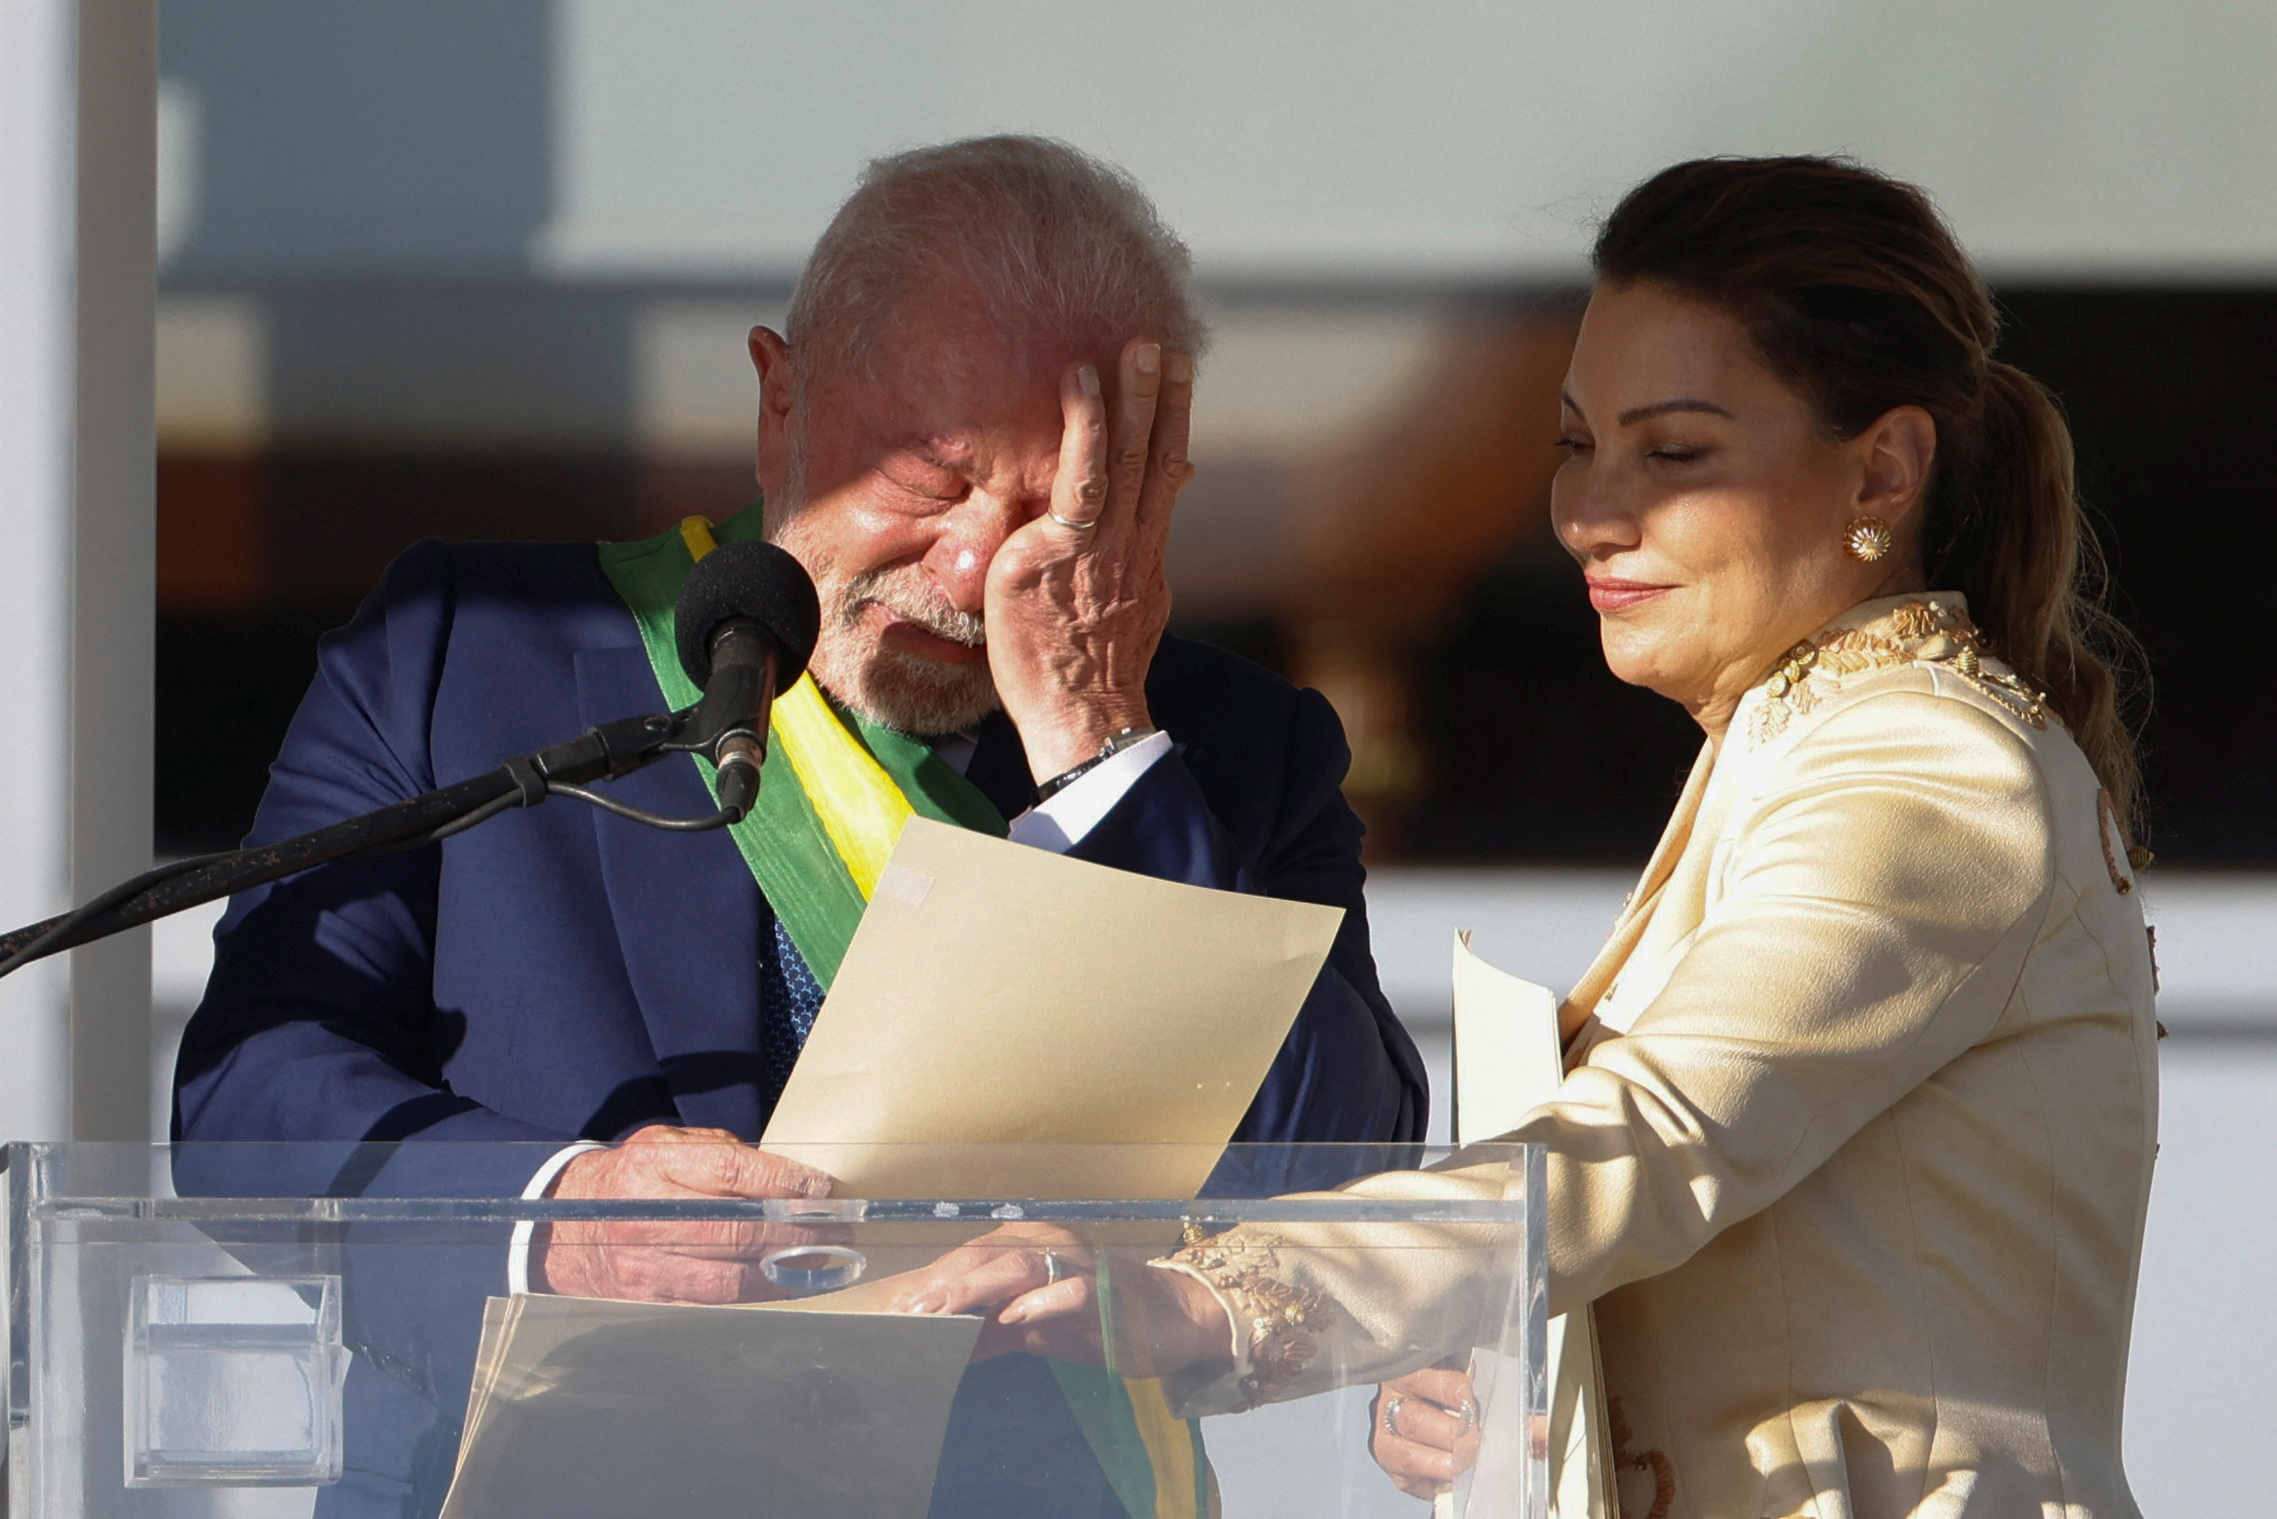 Lágrimas. Luiz Inacio Lula da Silva llora en su discurso junto a su esposa, Rosangela "Janja" da Silva